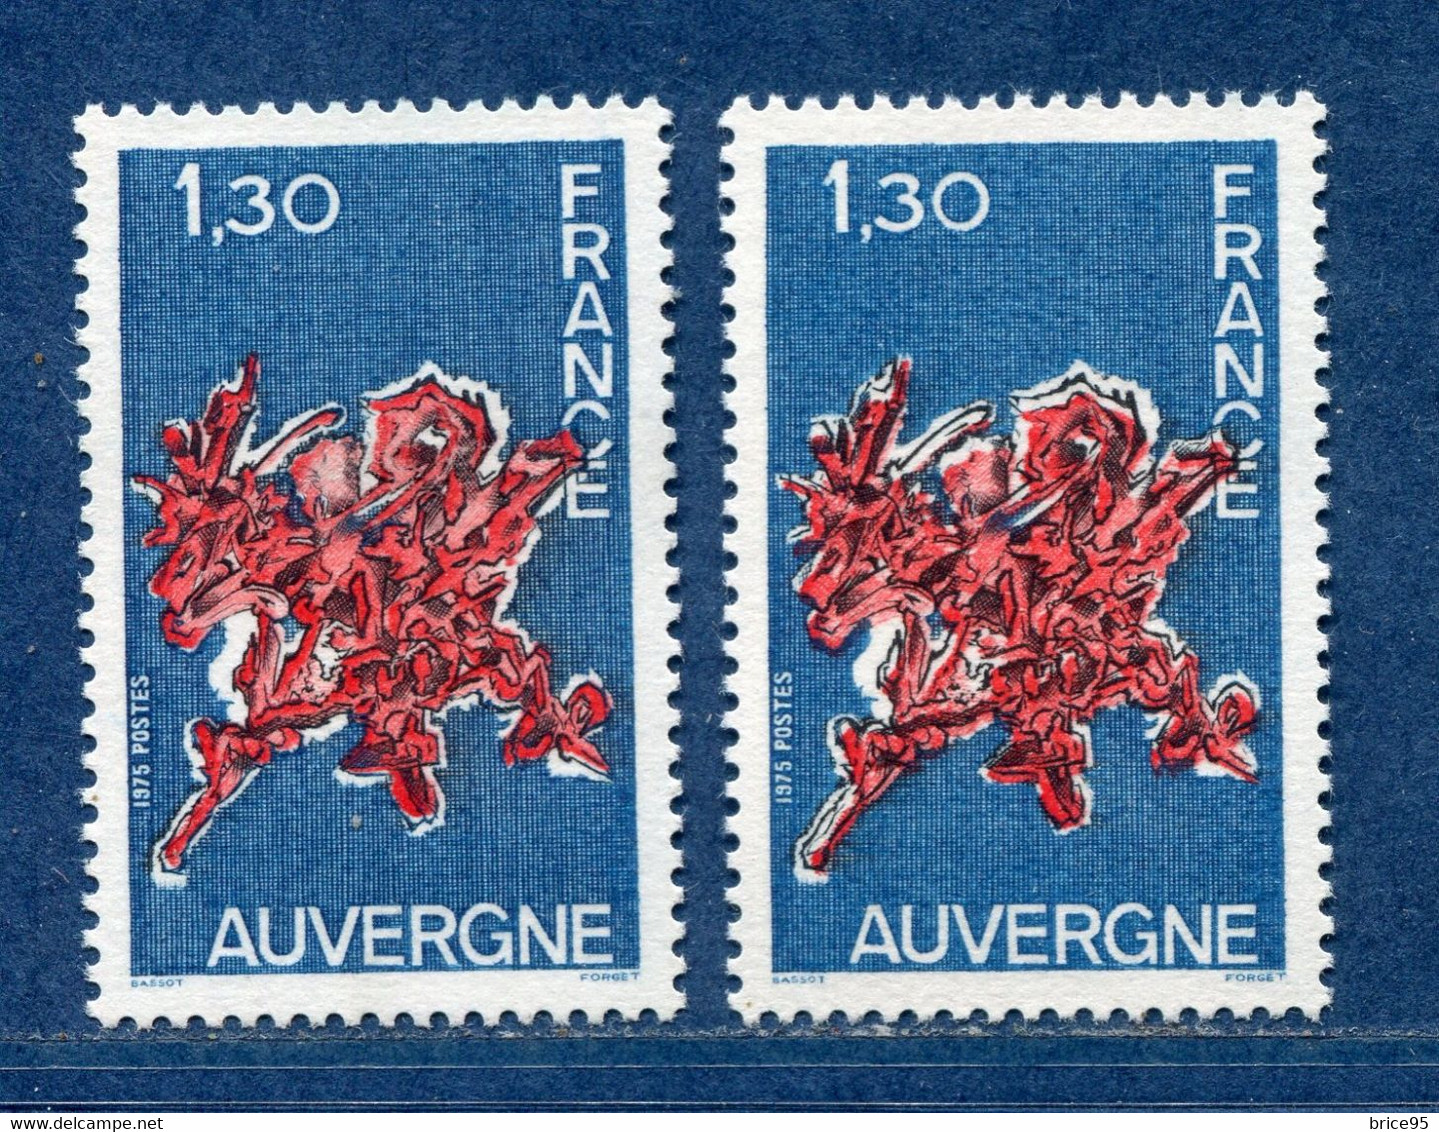 ⭐ France - Variété - YT N° 1850 - Couleurs - Pétouille - Neuf Sans Charnière - 1975 ⭐ - Neufs